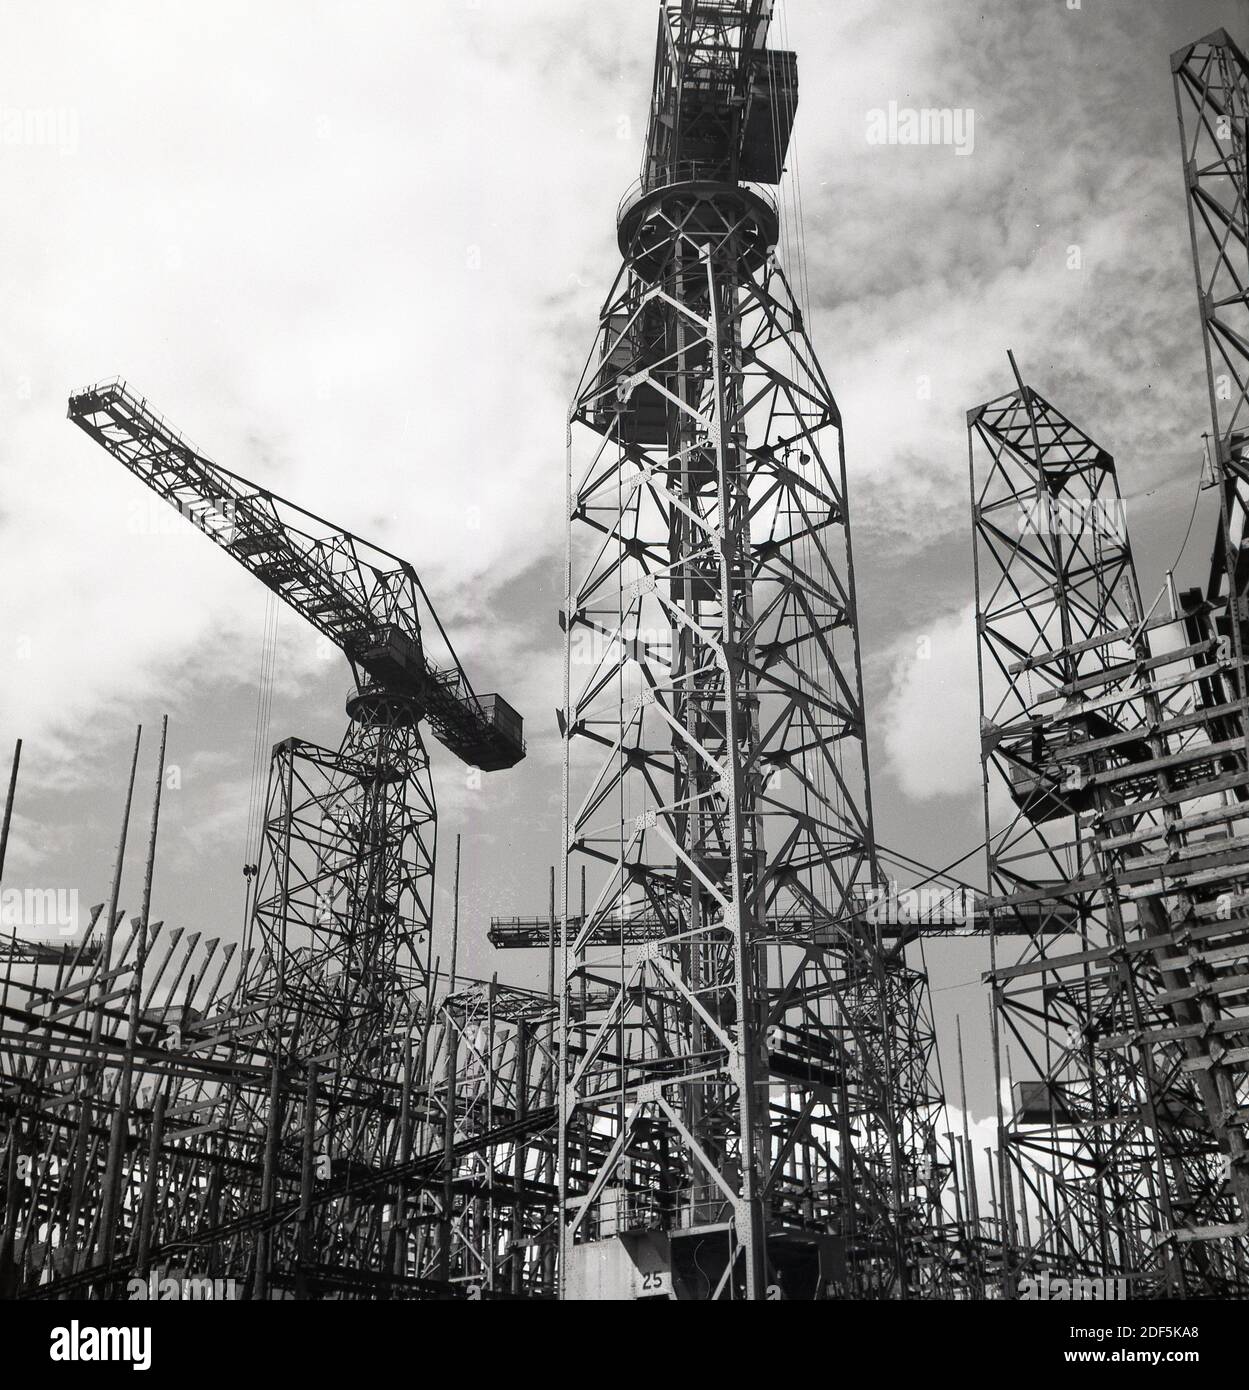 Années 1950, historique, vue des grues géantes et de l'équipement de portique à Belfast Docks, un chantier naval à Belfast, Irlande du Nord. Banque D'Images